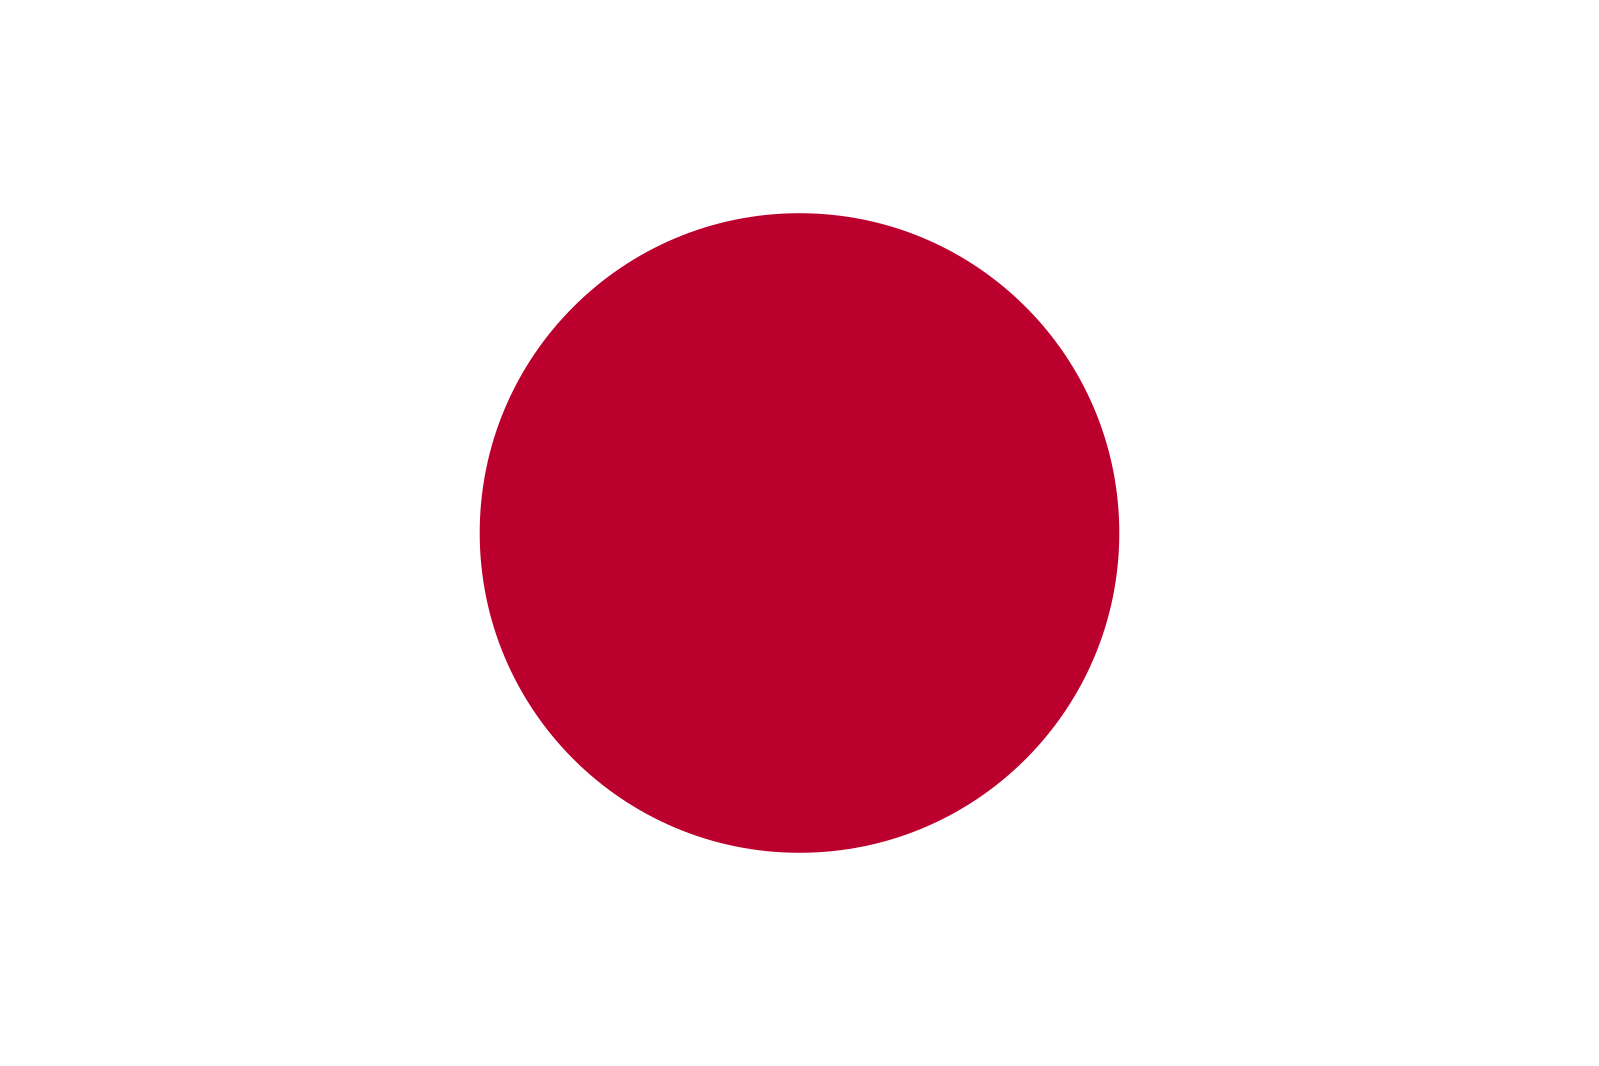 1599px-Flag_of_Japan.svg.png